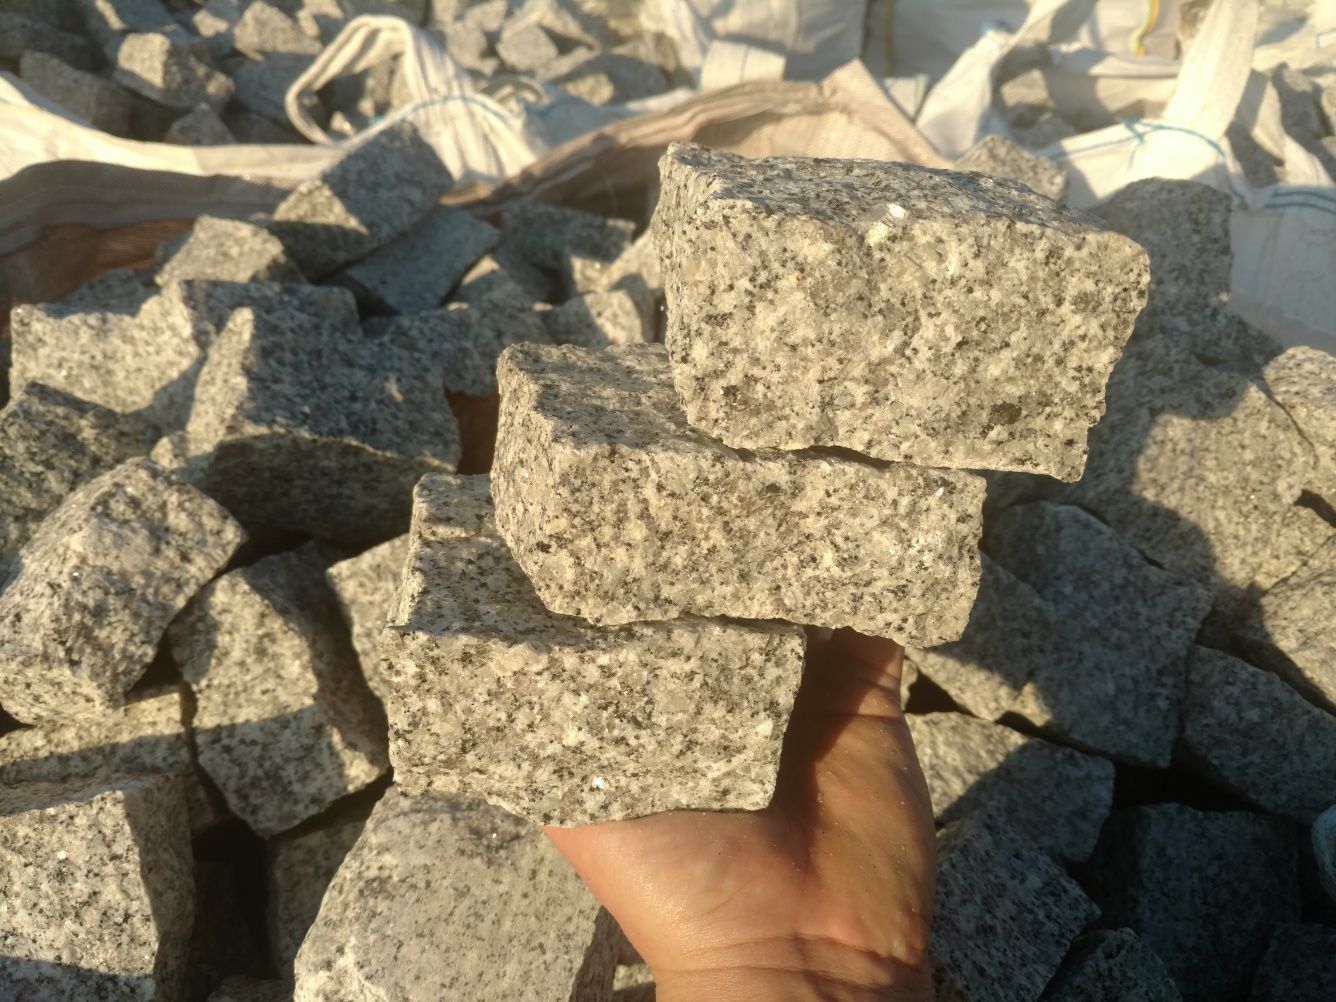 kostka granitowa 1gatunek brukowa granit obrzeża palisada kamień grys